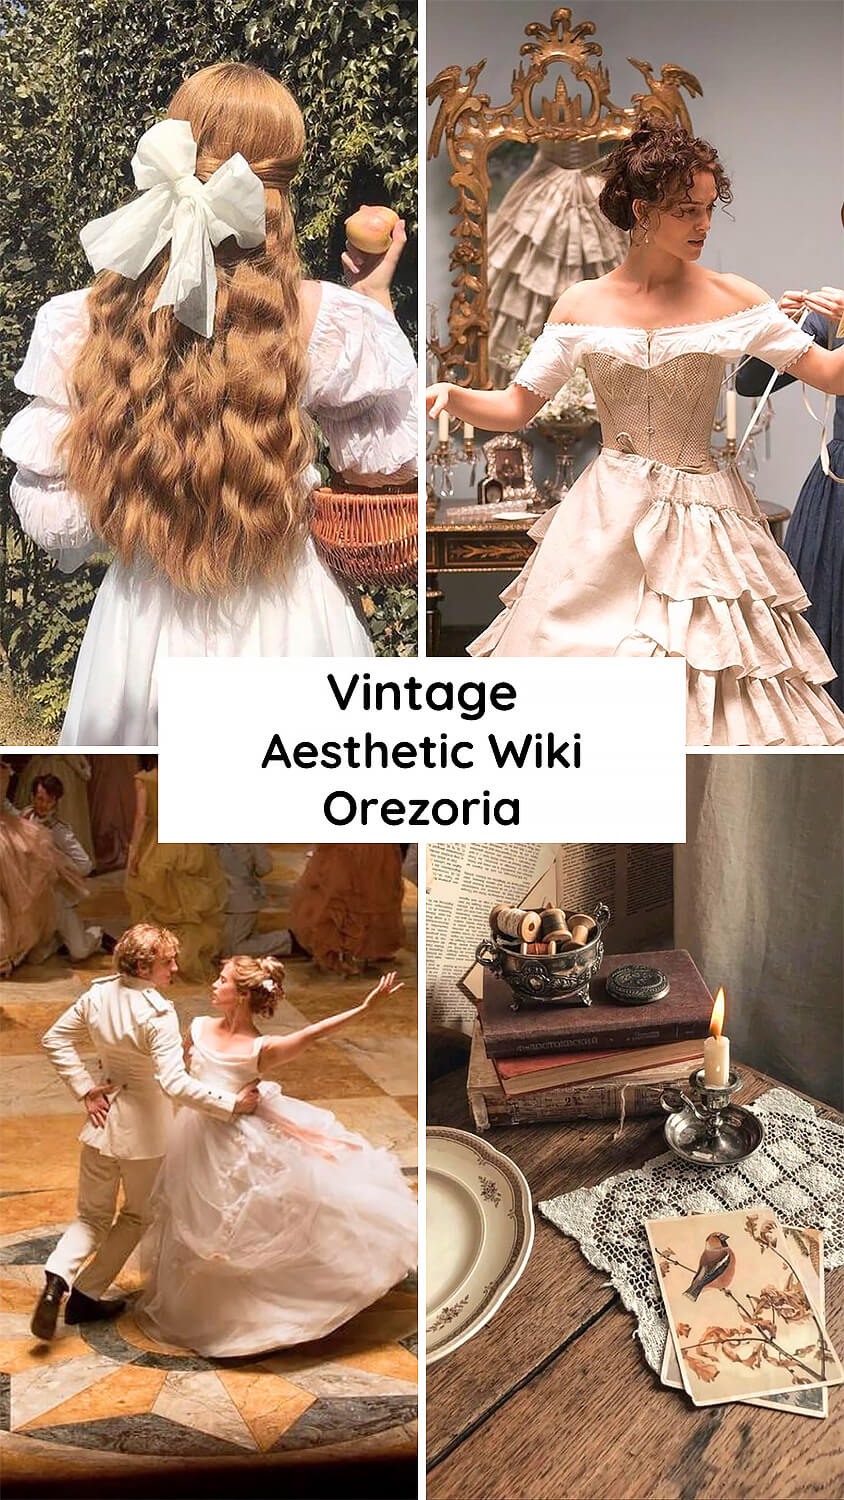 What is the Vintage Aesthetic - Aesthetics Wiki - Orezoria